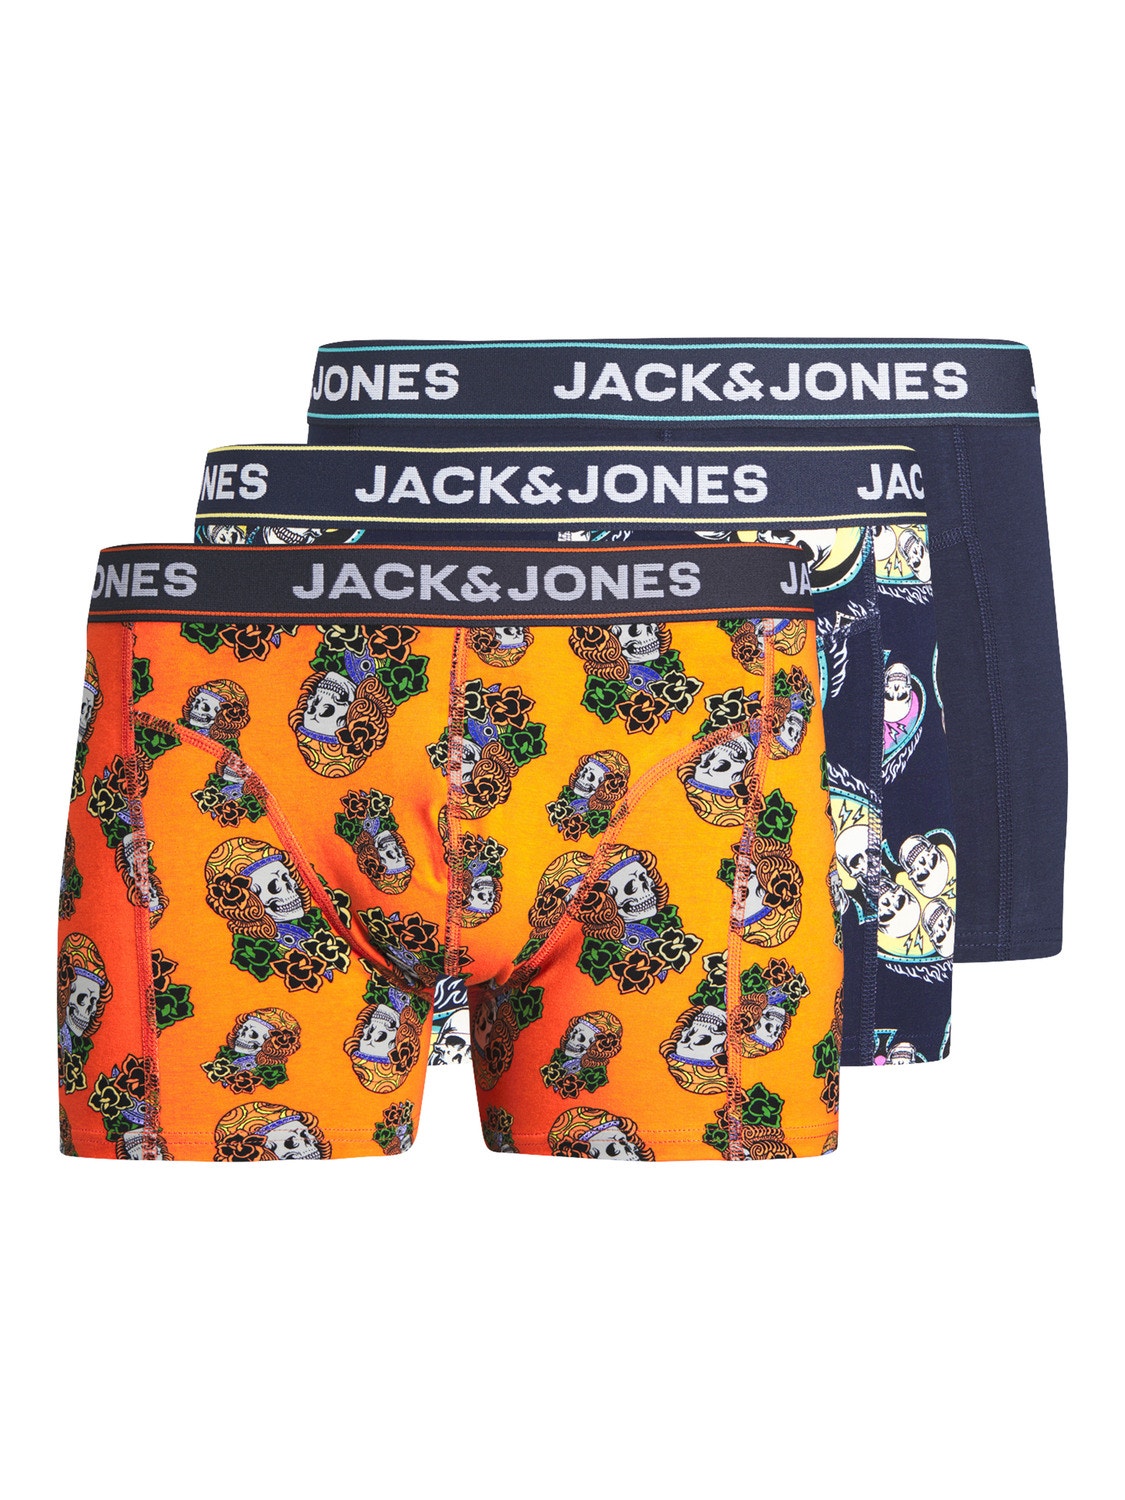 Jack & Jones 3-pack Trunks -Navy Blazer - 12252541